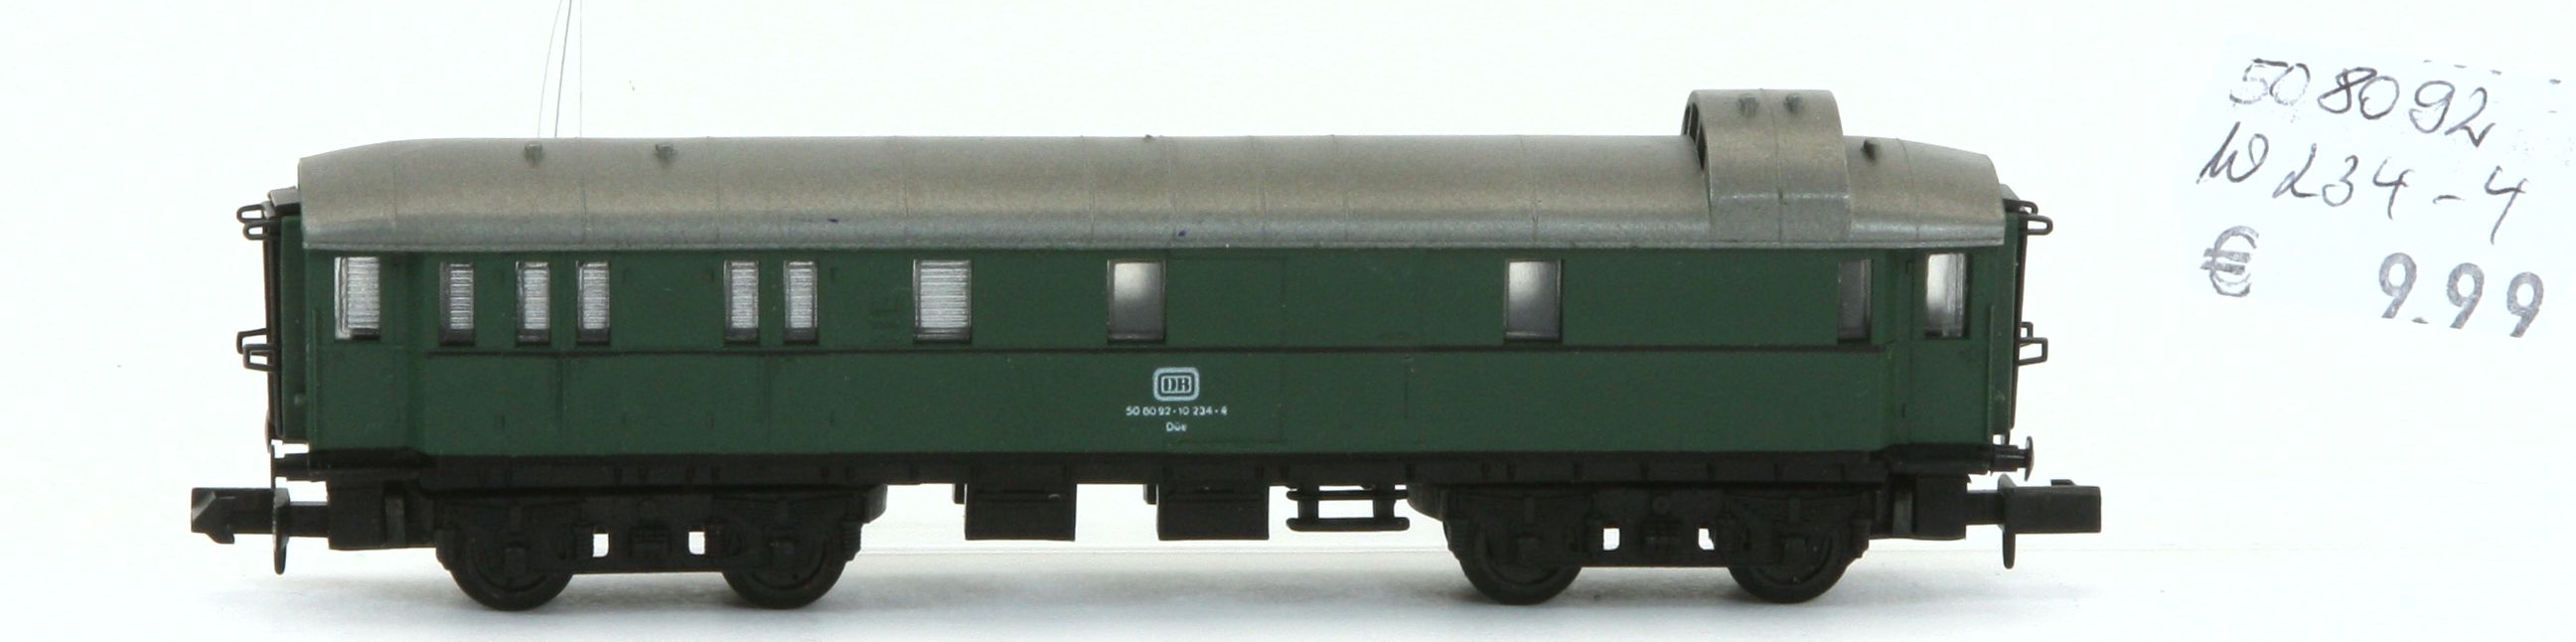 Arnold 508092-10234-4-G - Express D-Zug Packwagen,DB,grün